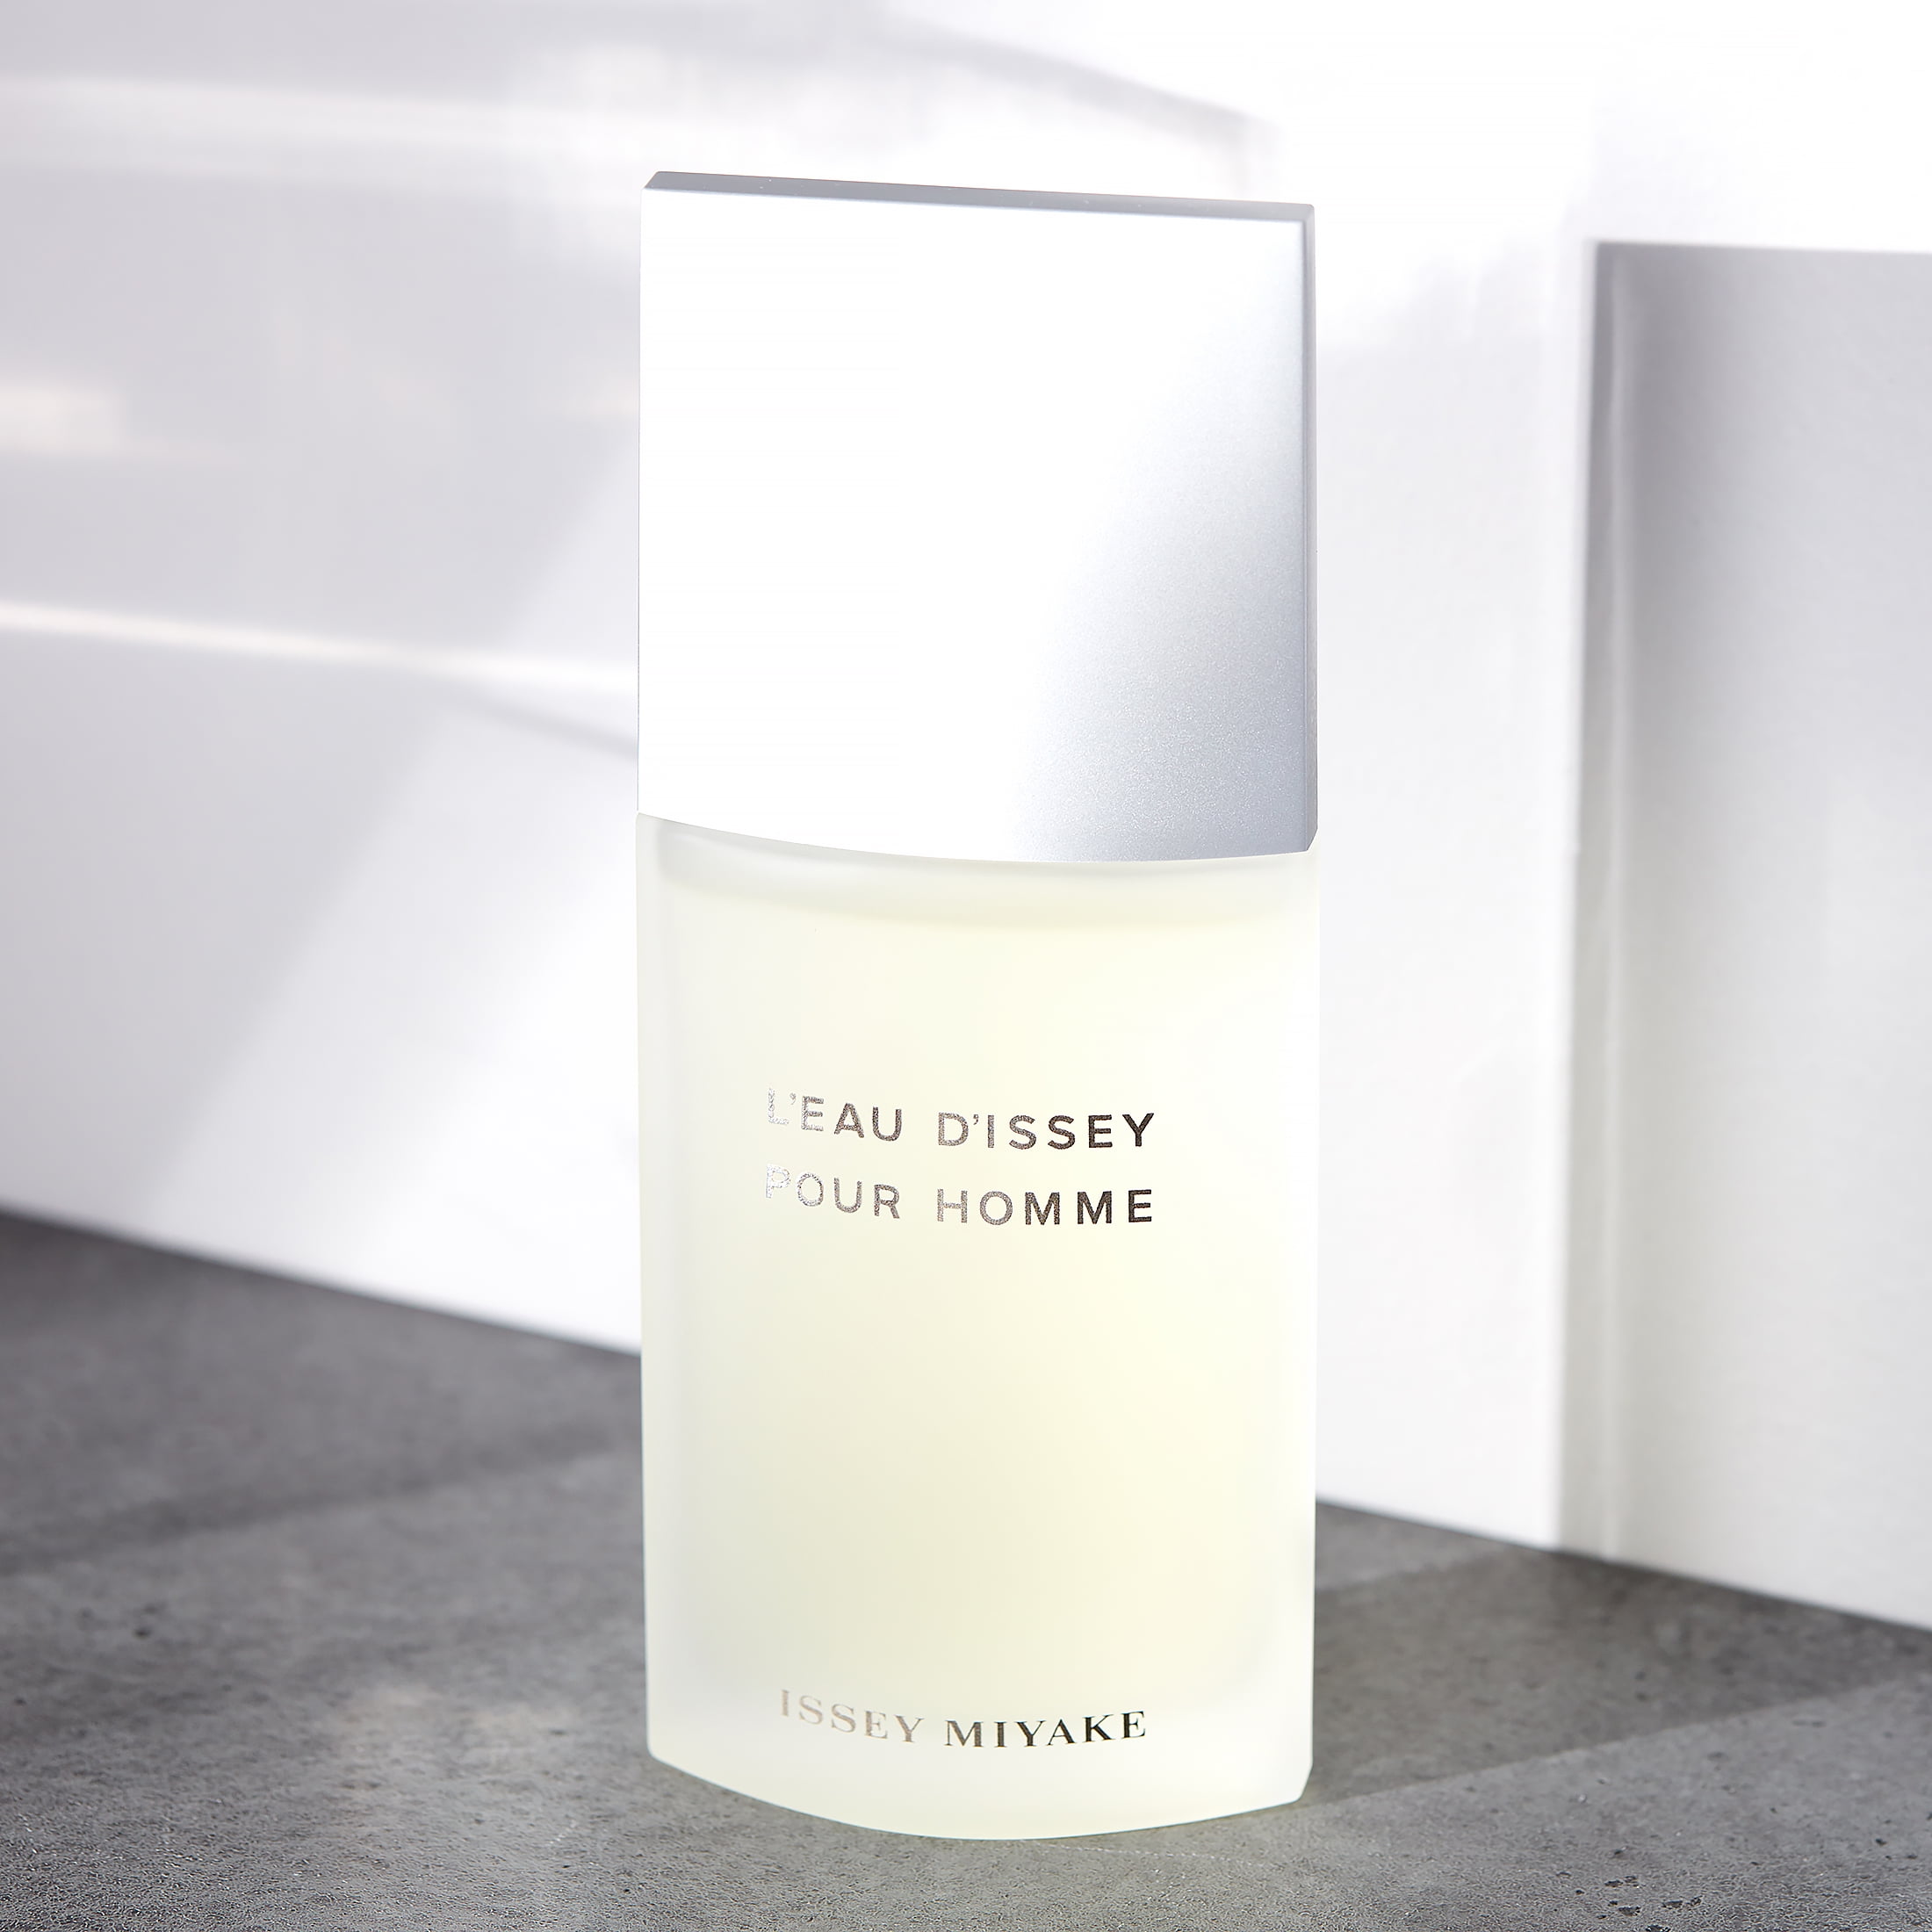 L'Eau d'Issey pour Homme by Issey Miyake (Eau de Toilette) » Reviews &  Perfume Facts